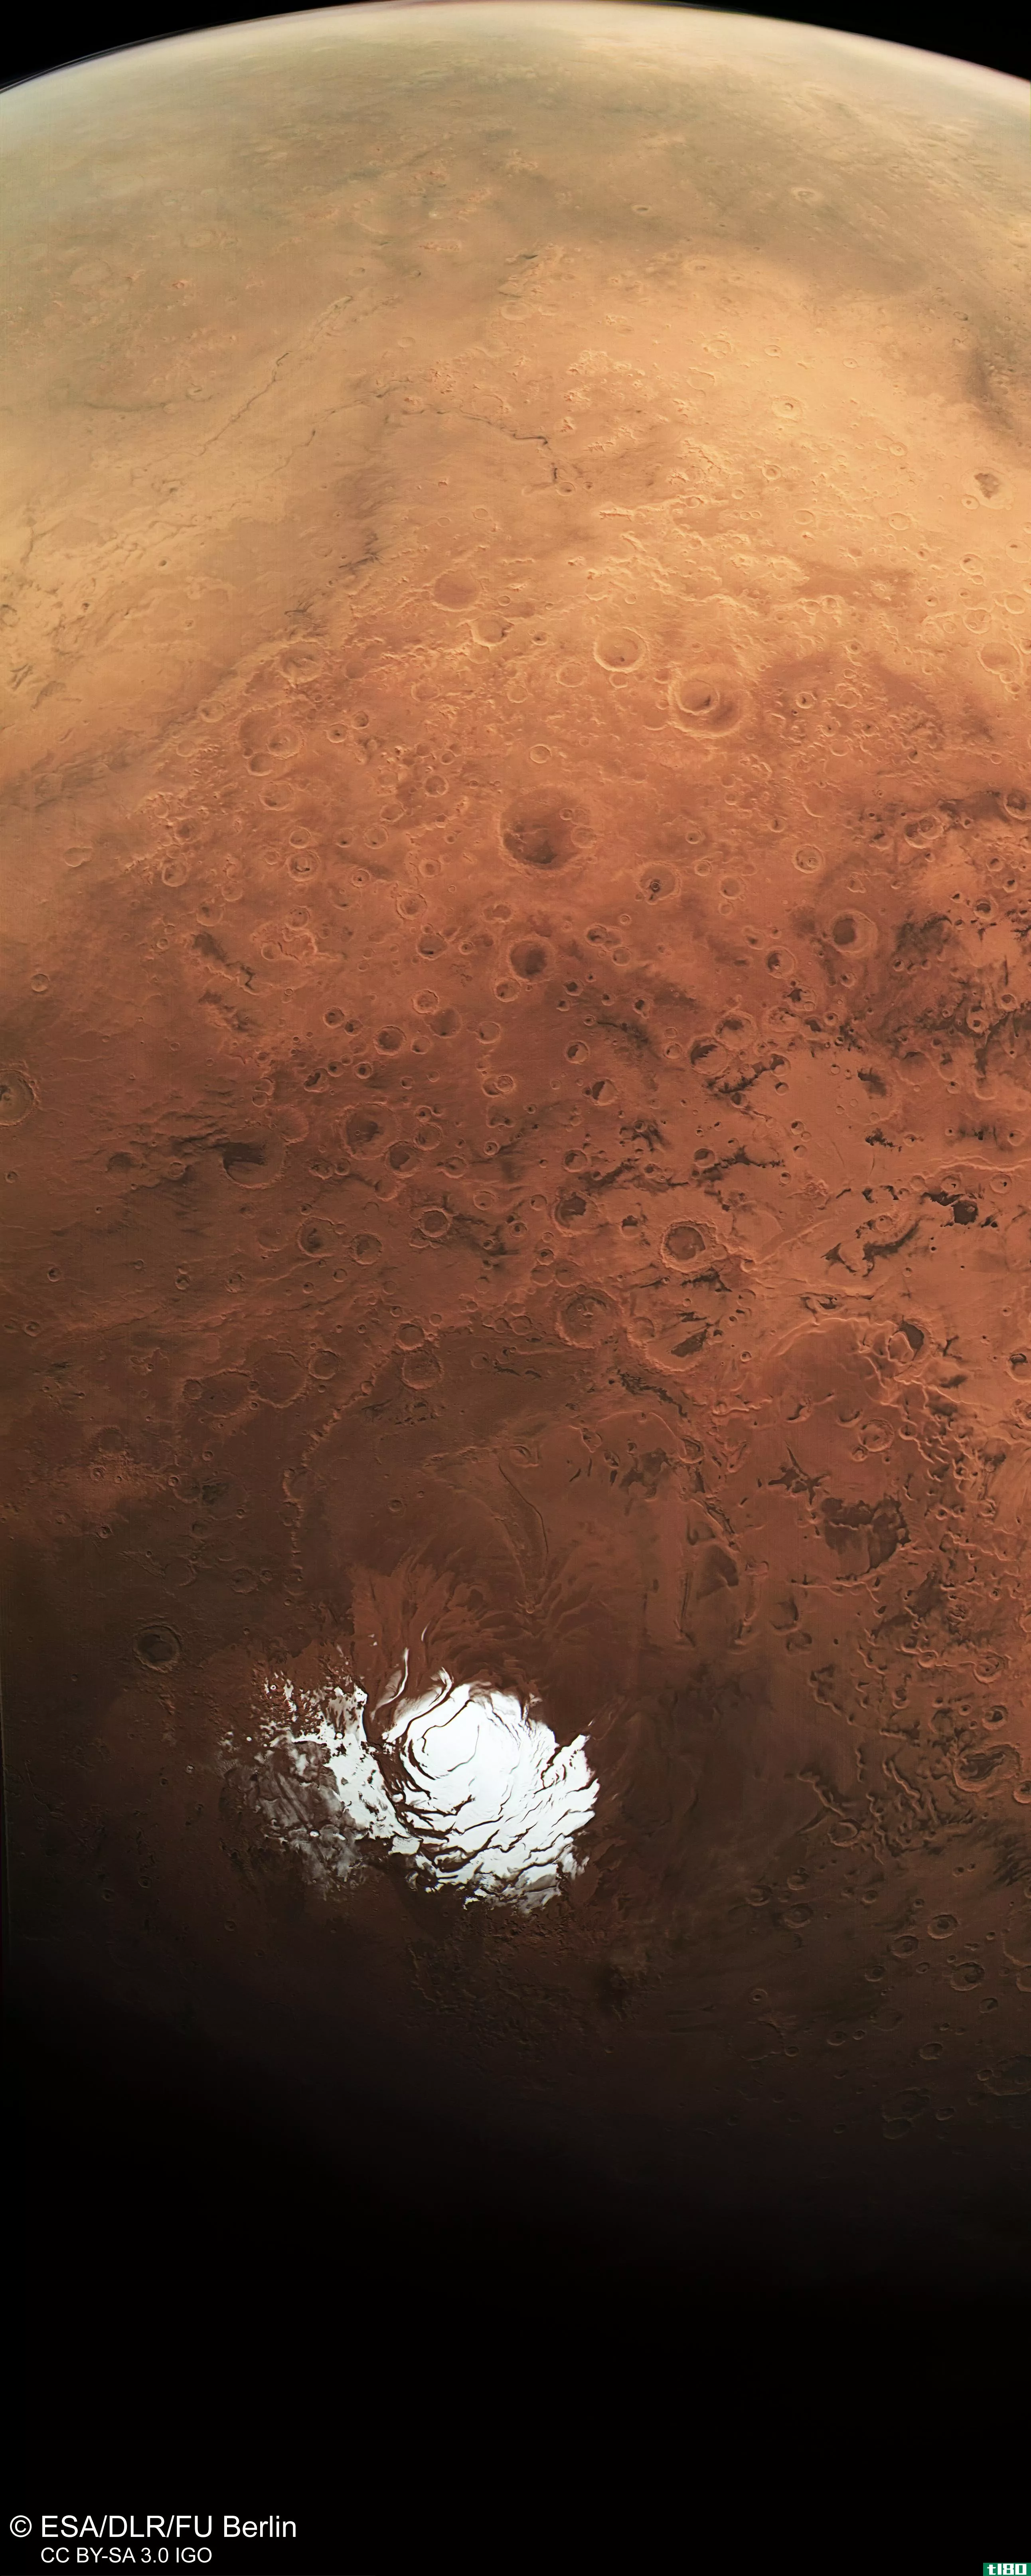 深深地凝视着这个美丽的火星南极夏季全景